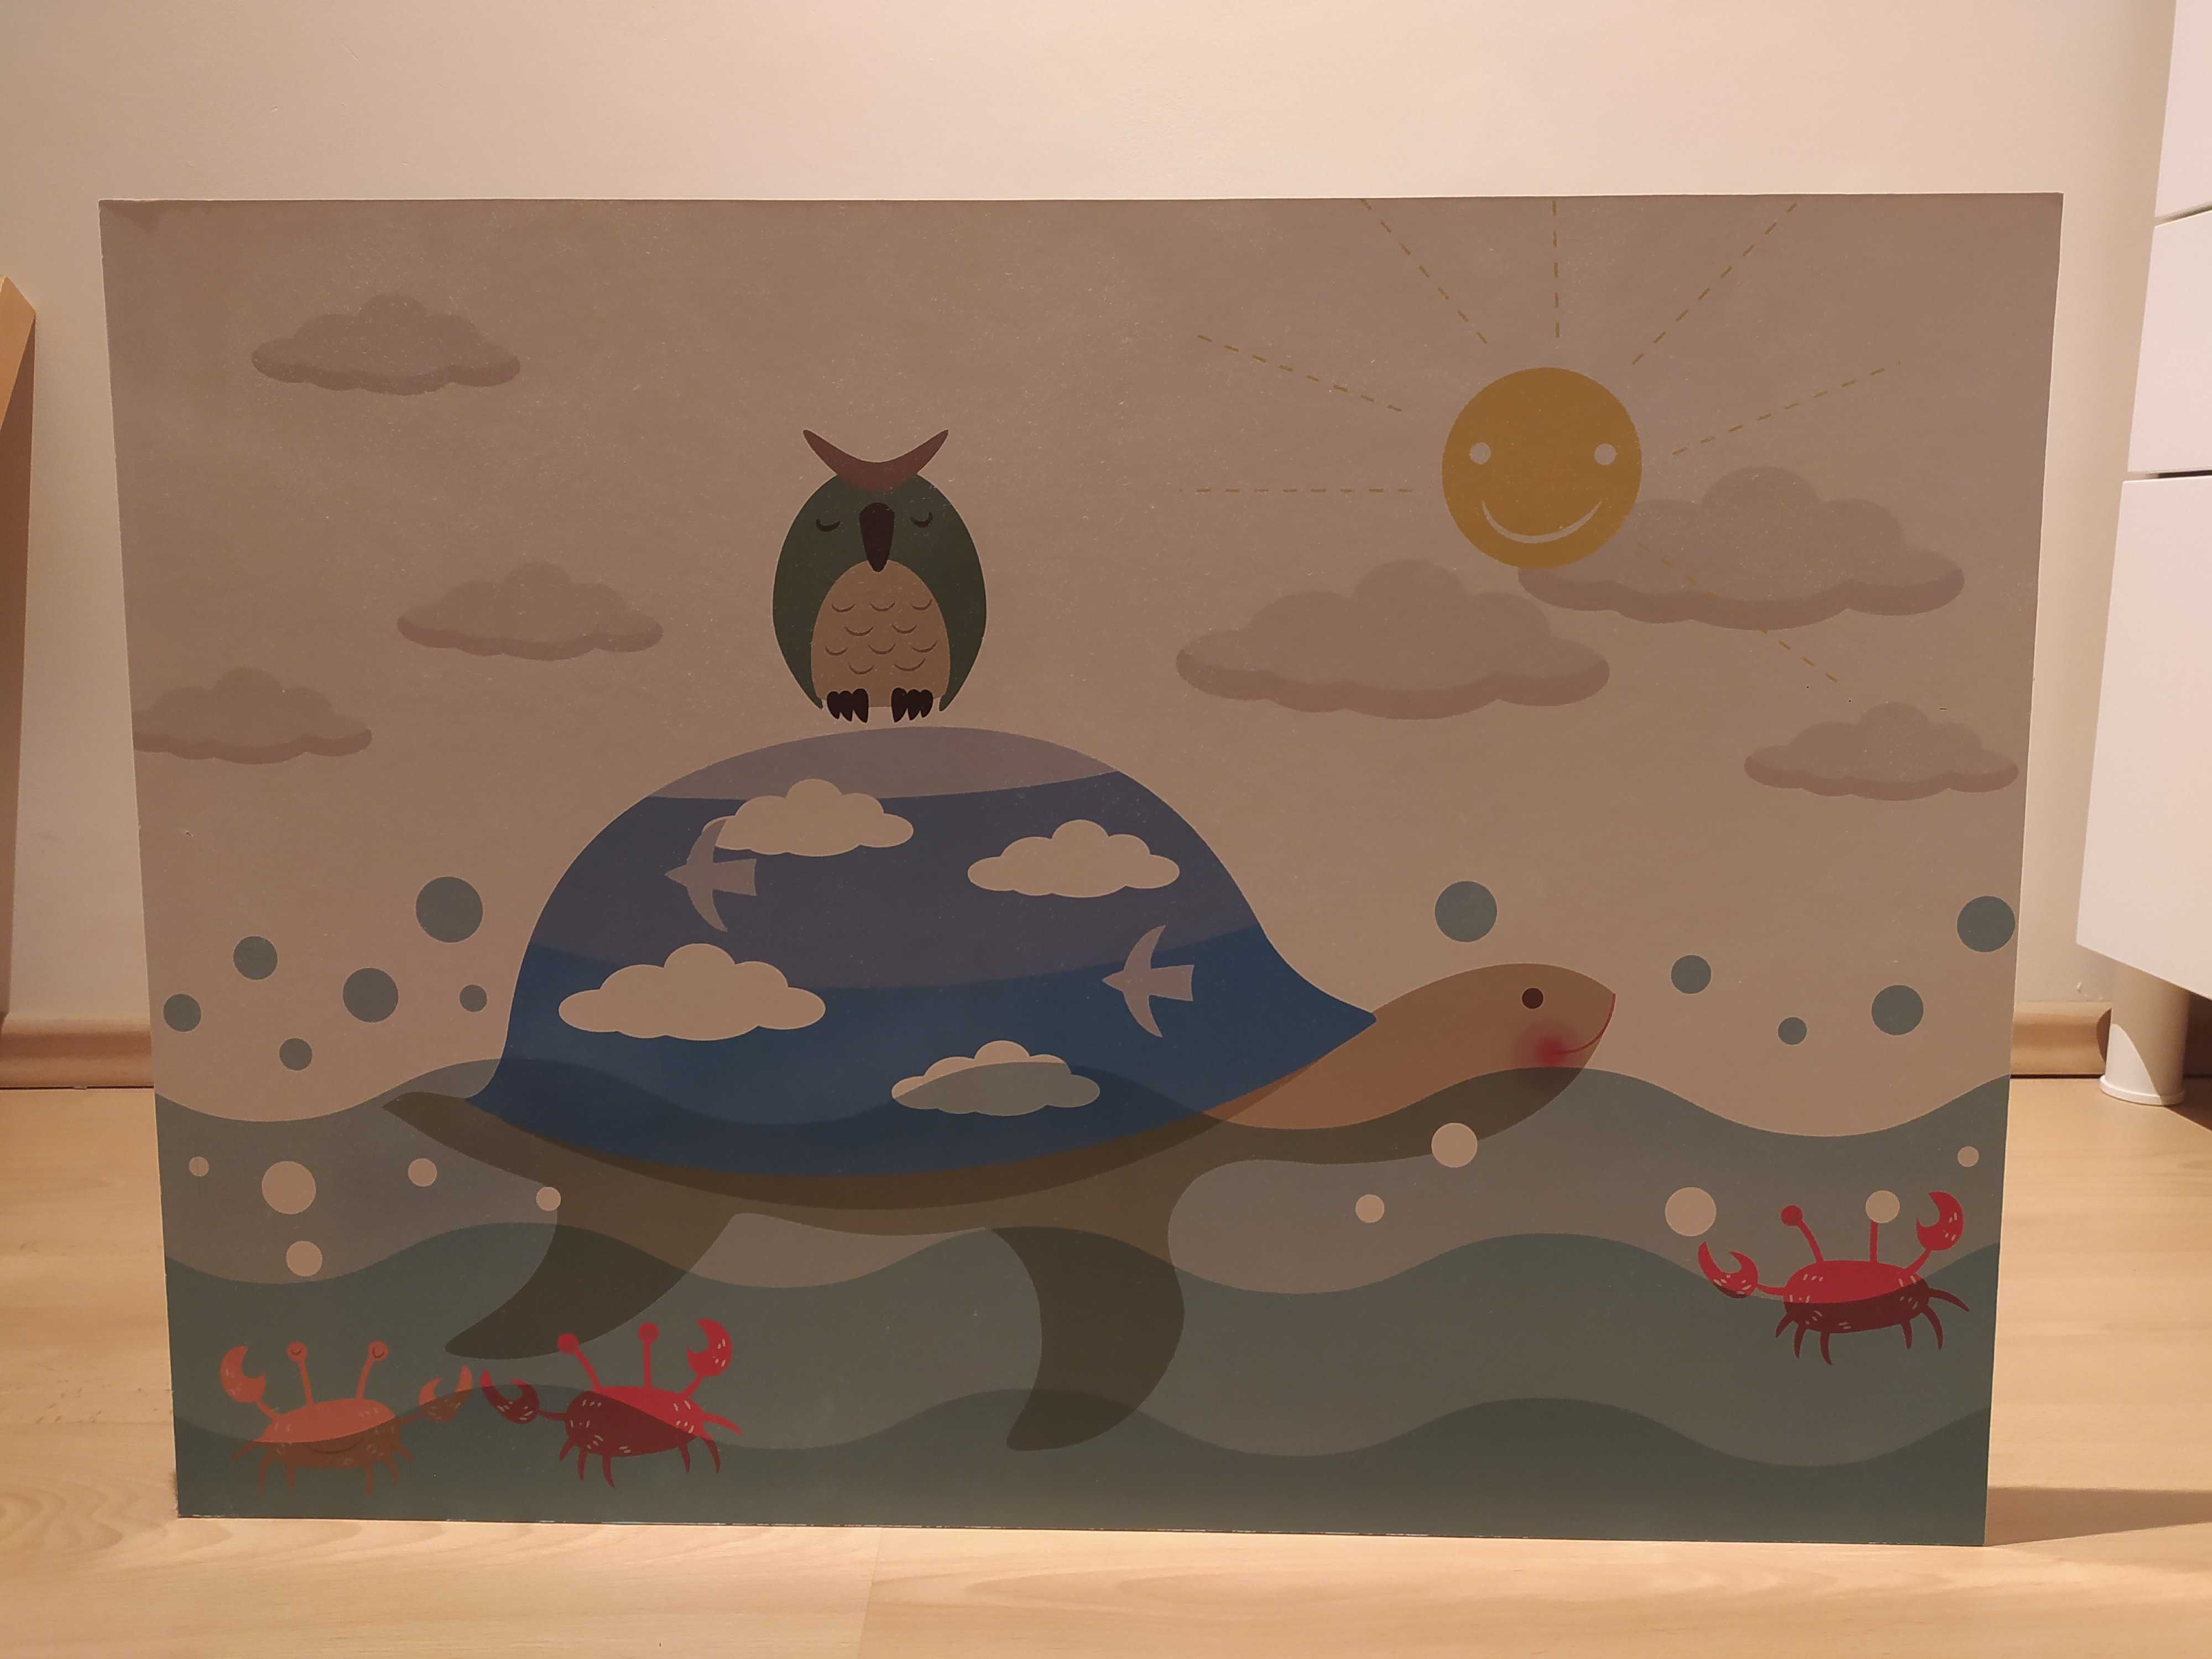 Obrazek do pokoju dziecięcego żółw i sowa Ikea